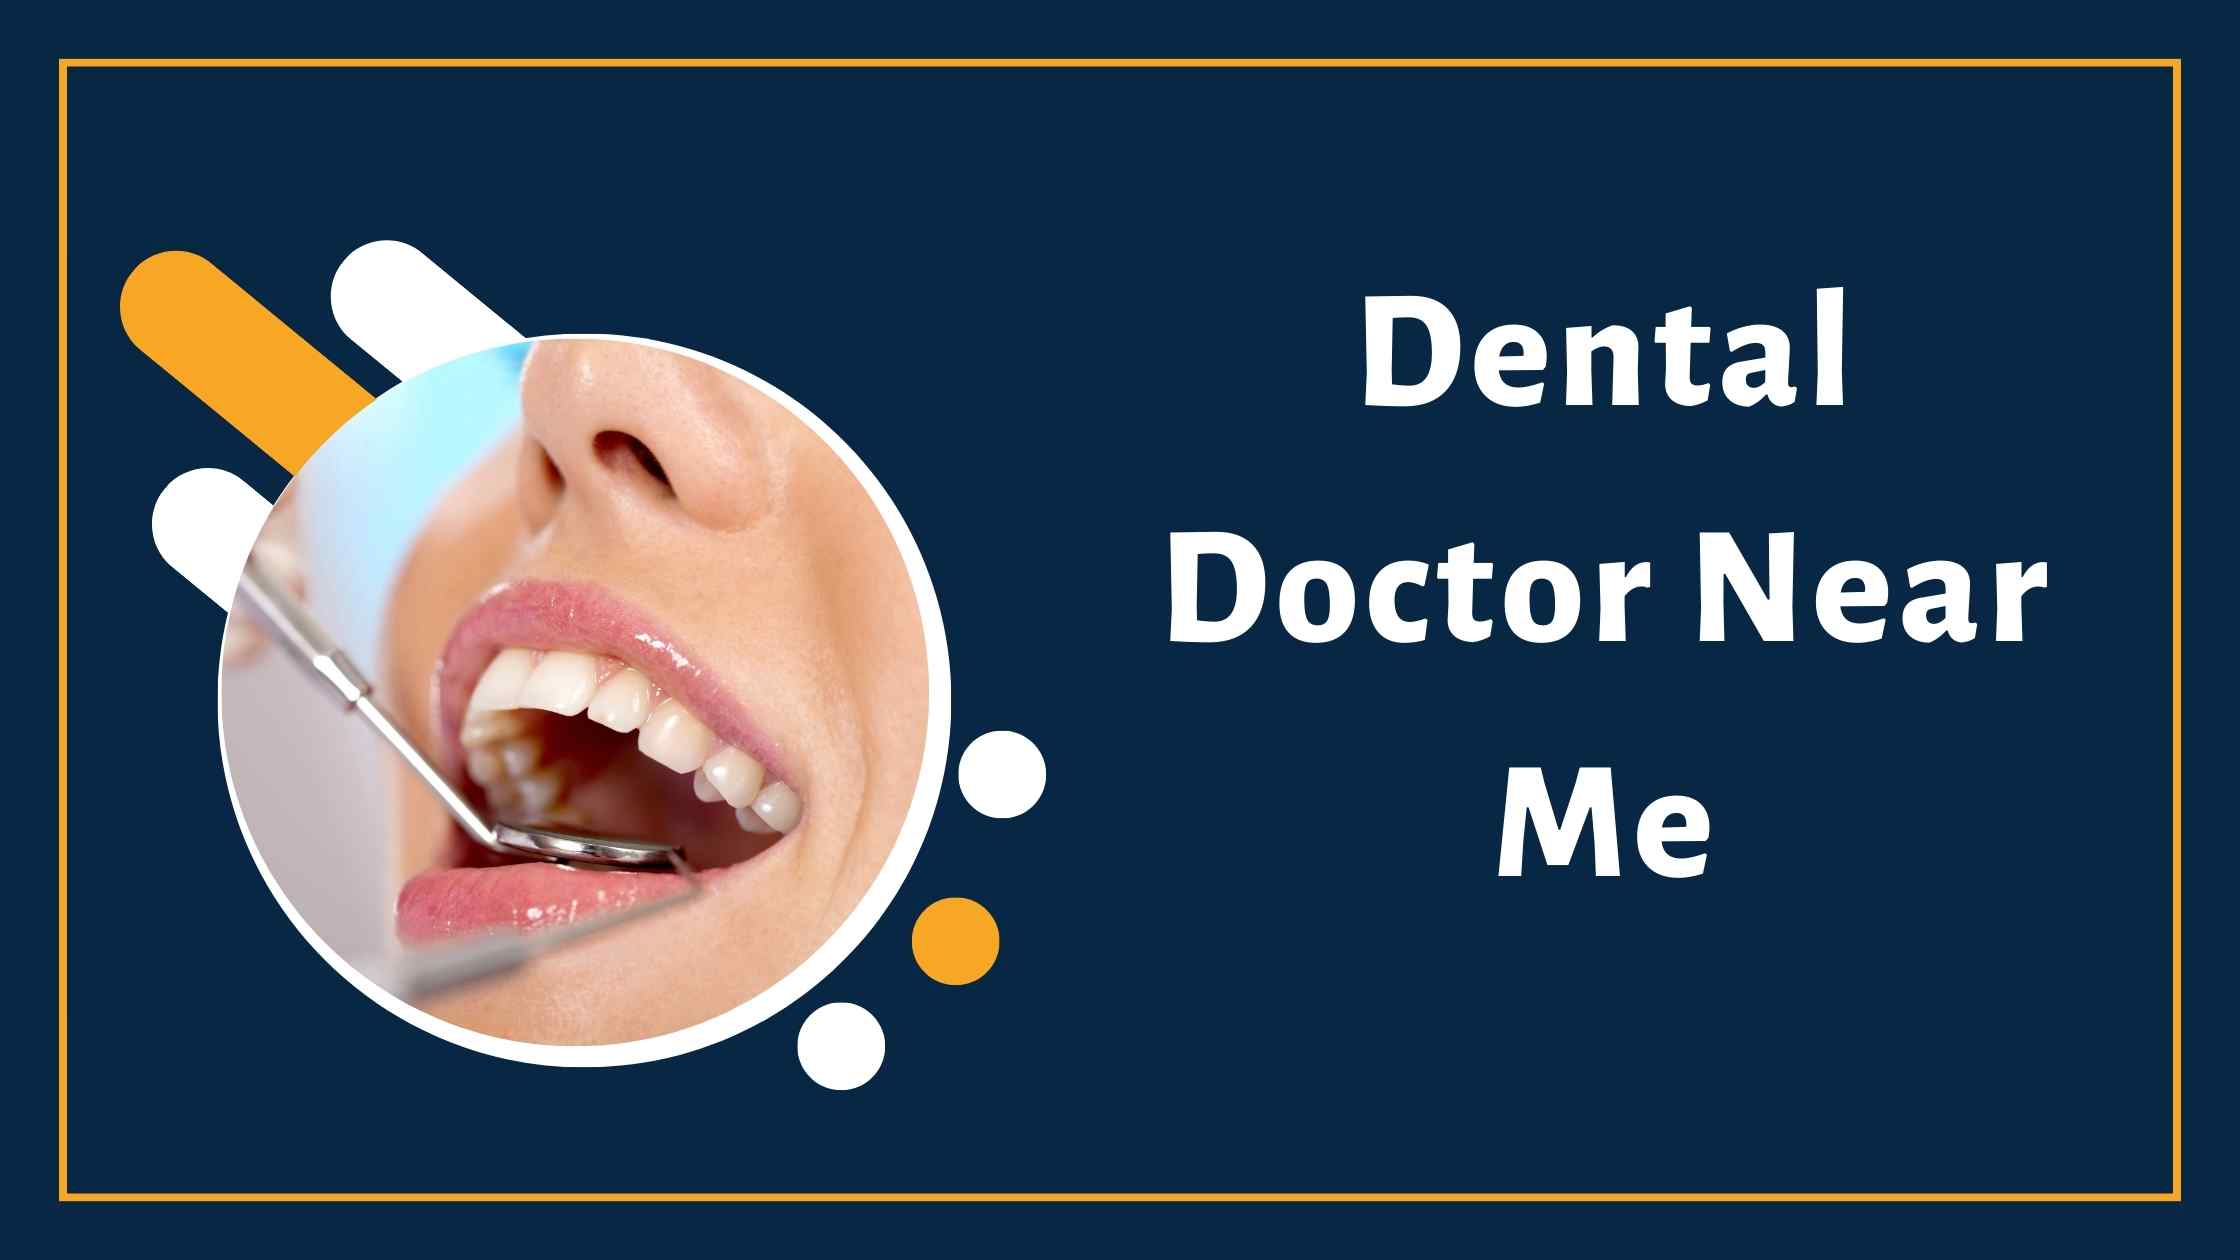 Find Dental Doctor Near Me | Book Dental Doctor Near Me | Dant ke Doctor Near Me